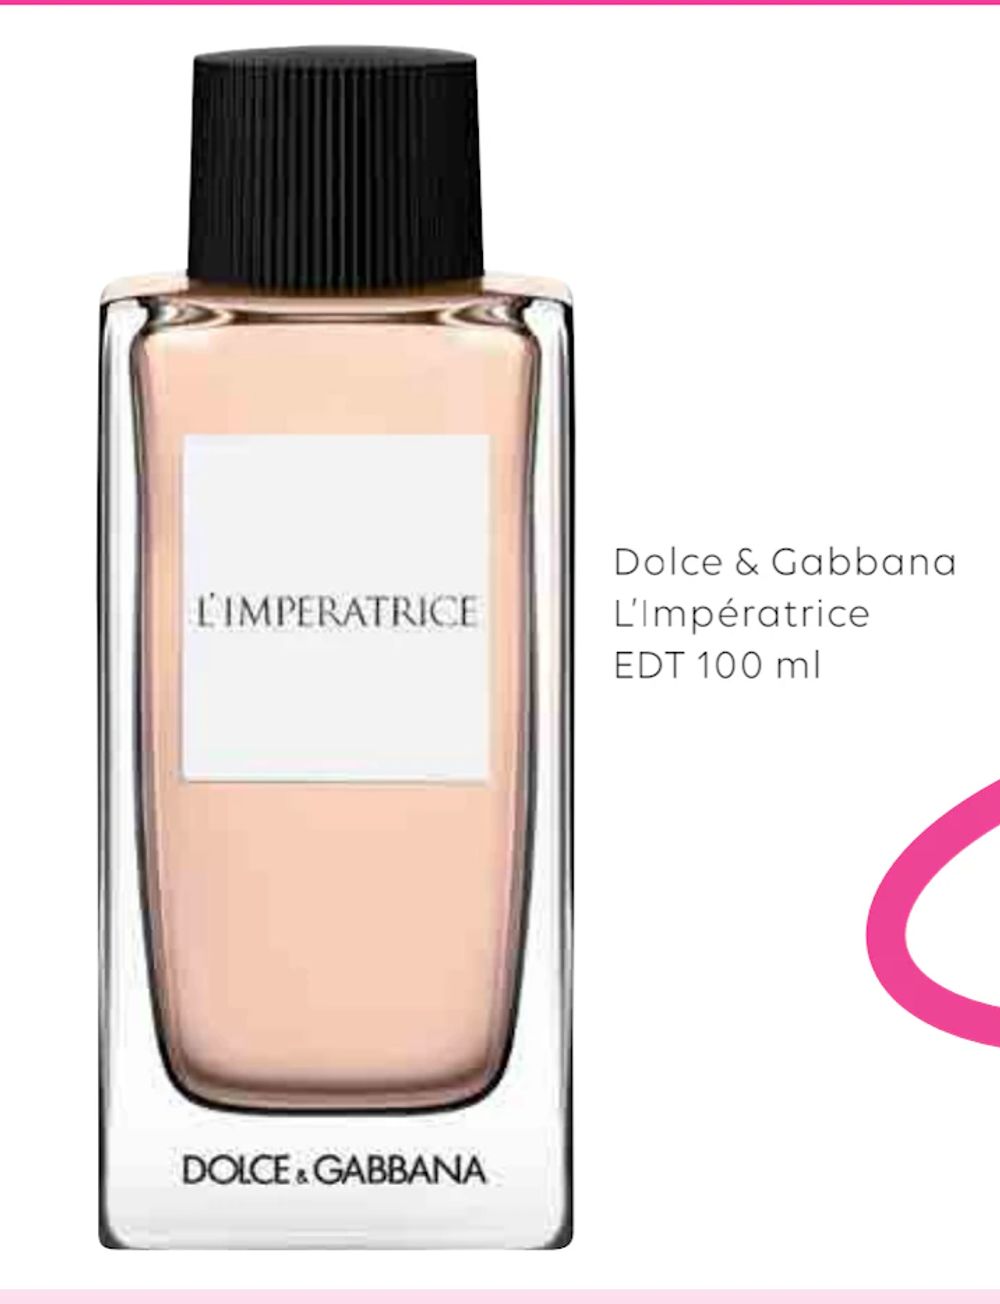 Tilbud på Dolce & Gabbana L’Impératrice EDT 100 ml fra Scandlines Travel Shop til 299 kr.